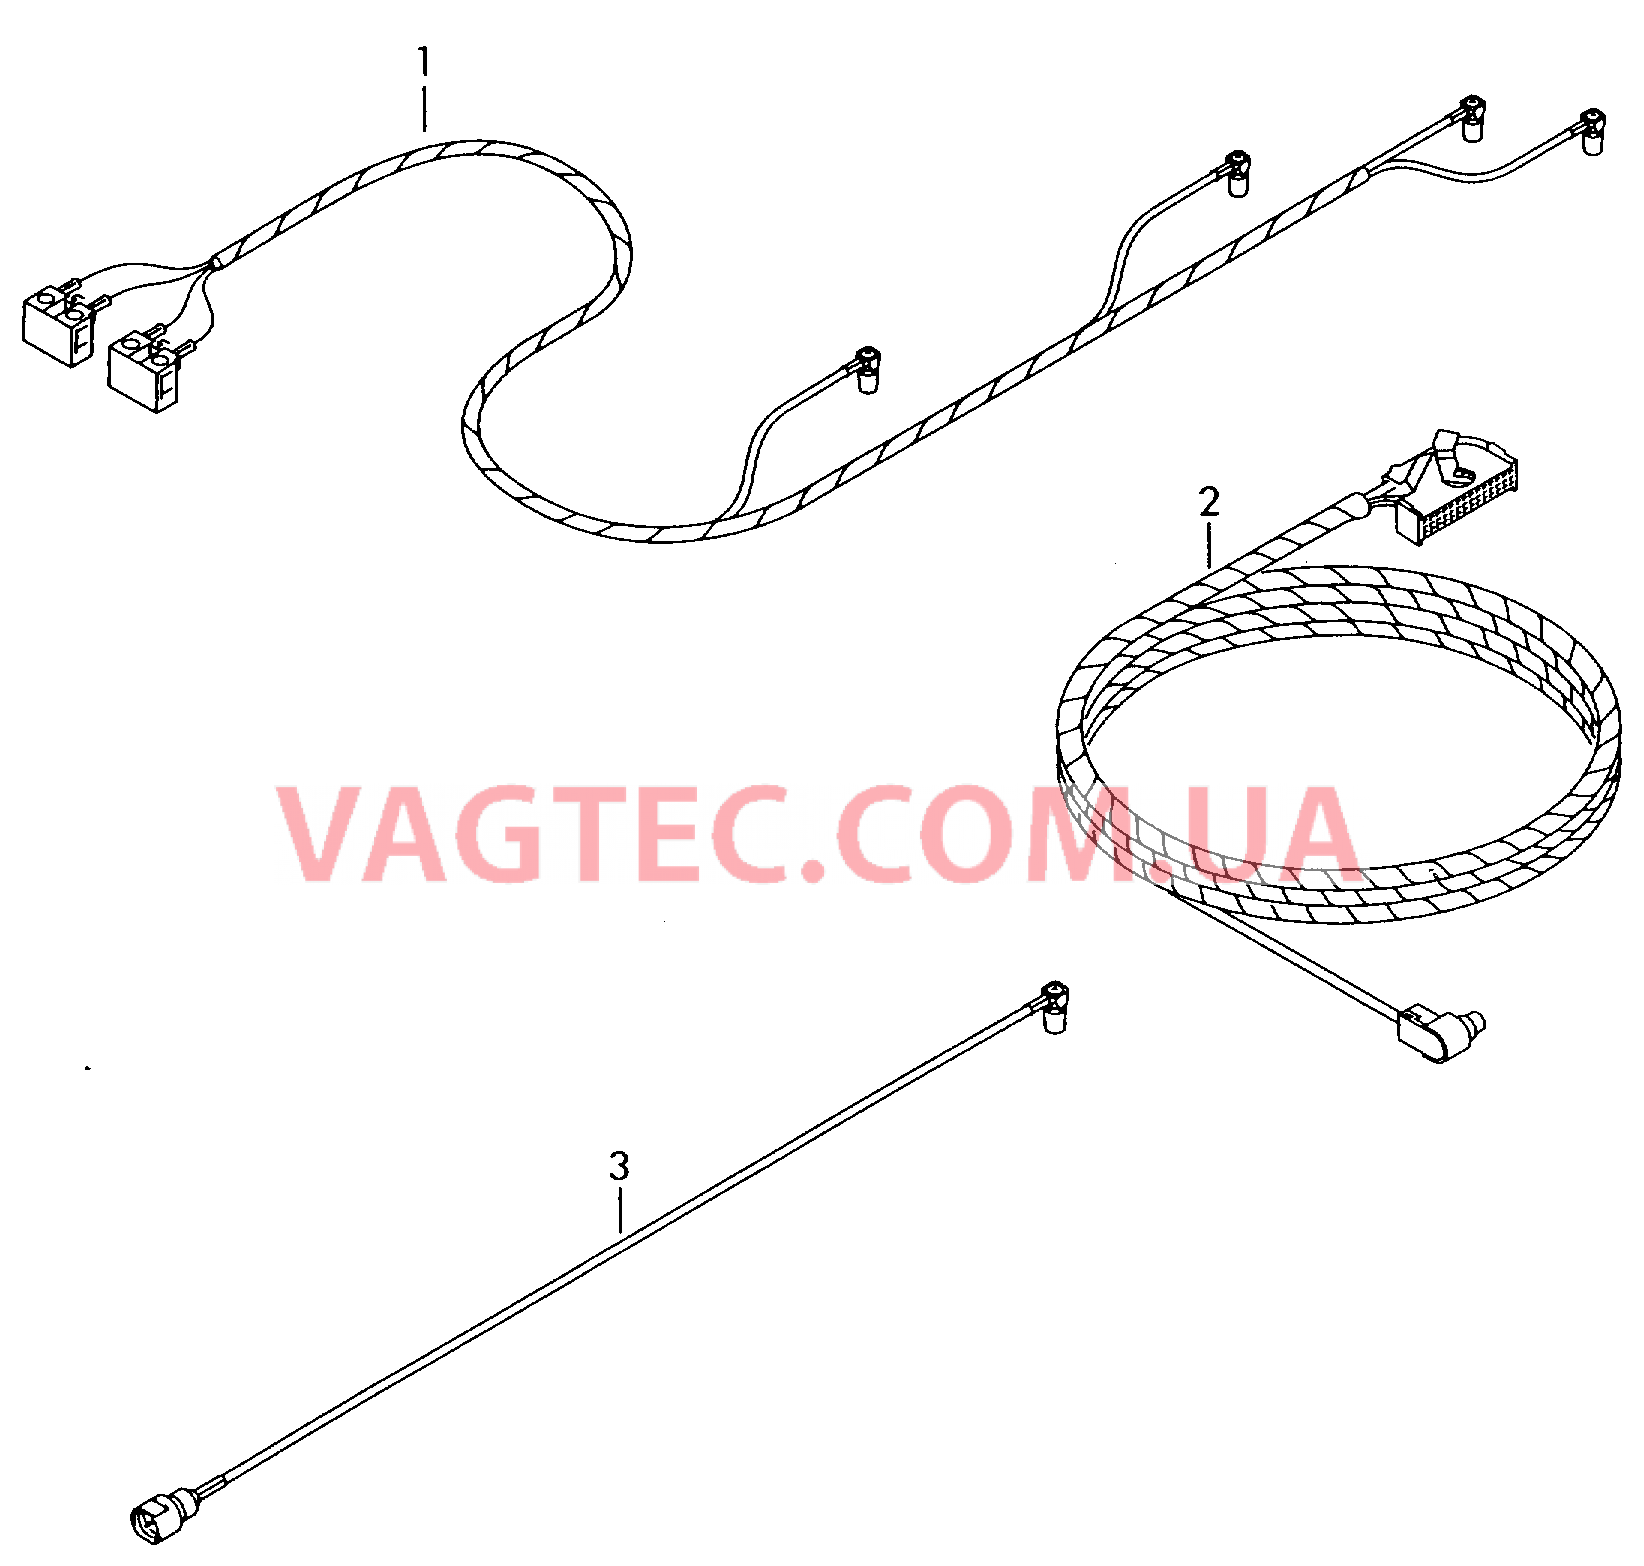 Жгут проводов системы навигации  Антенный кабель        также см. иллюстрацию:  для VOLKSWAGEN Passat 2003